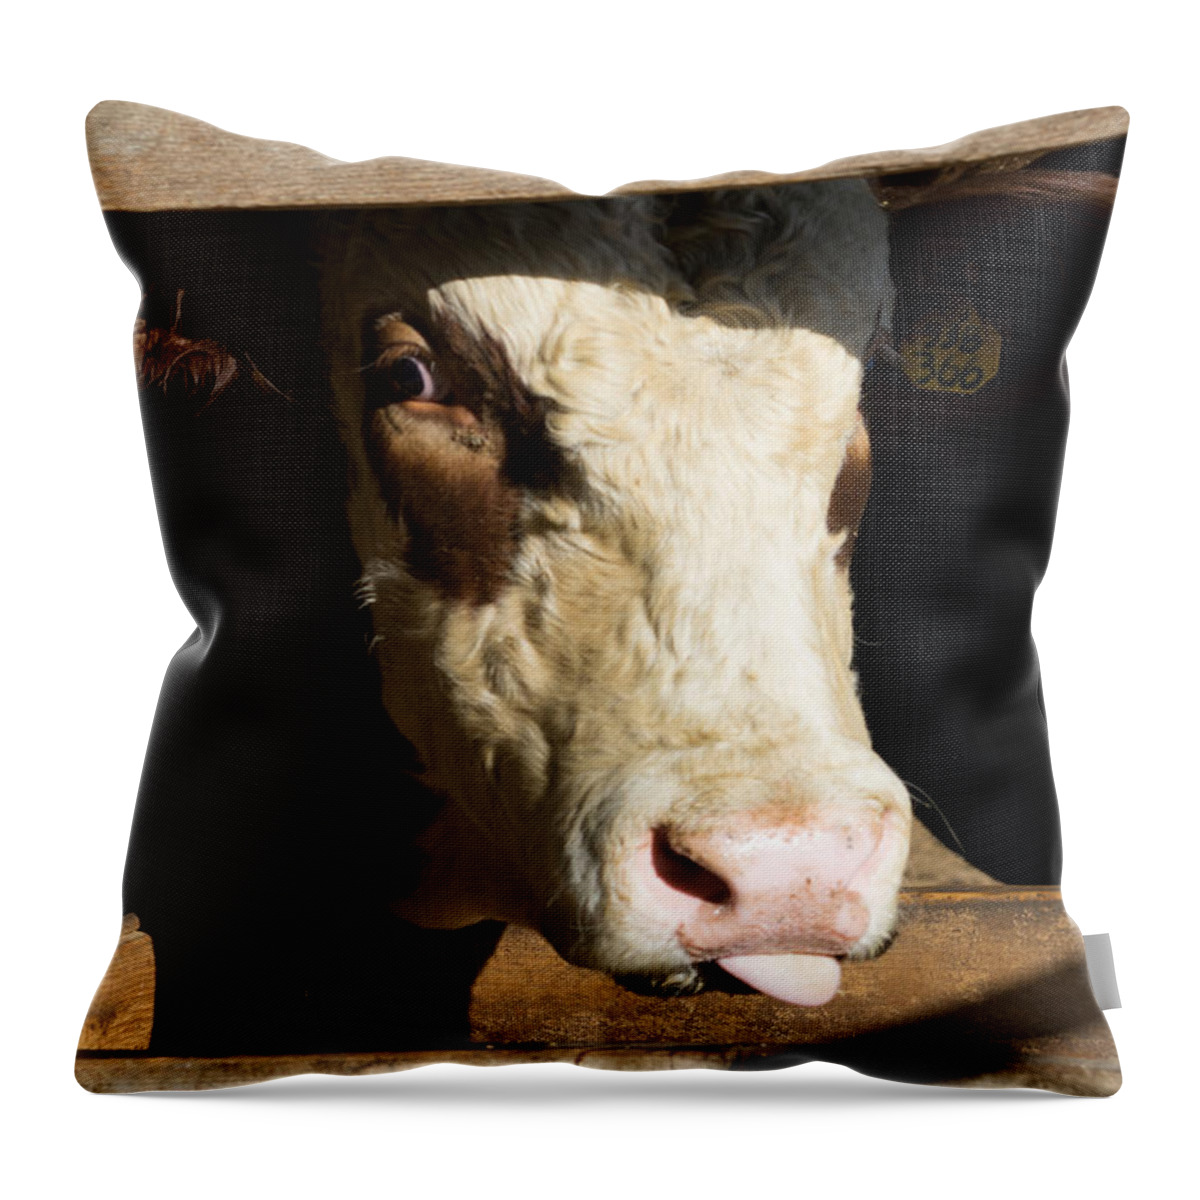 Bull Snark Throw Pillow featuring the photograph Bull Snark by Brooke Bowdren